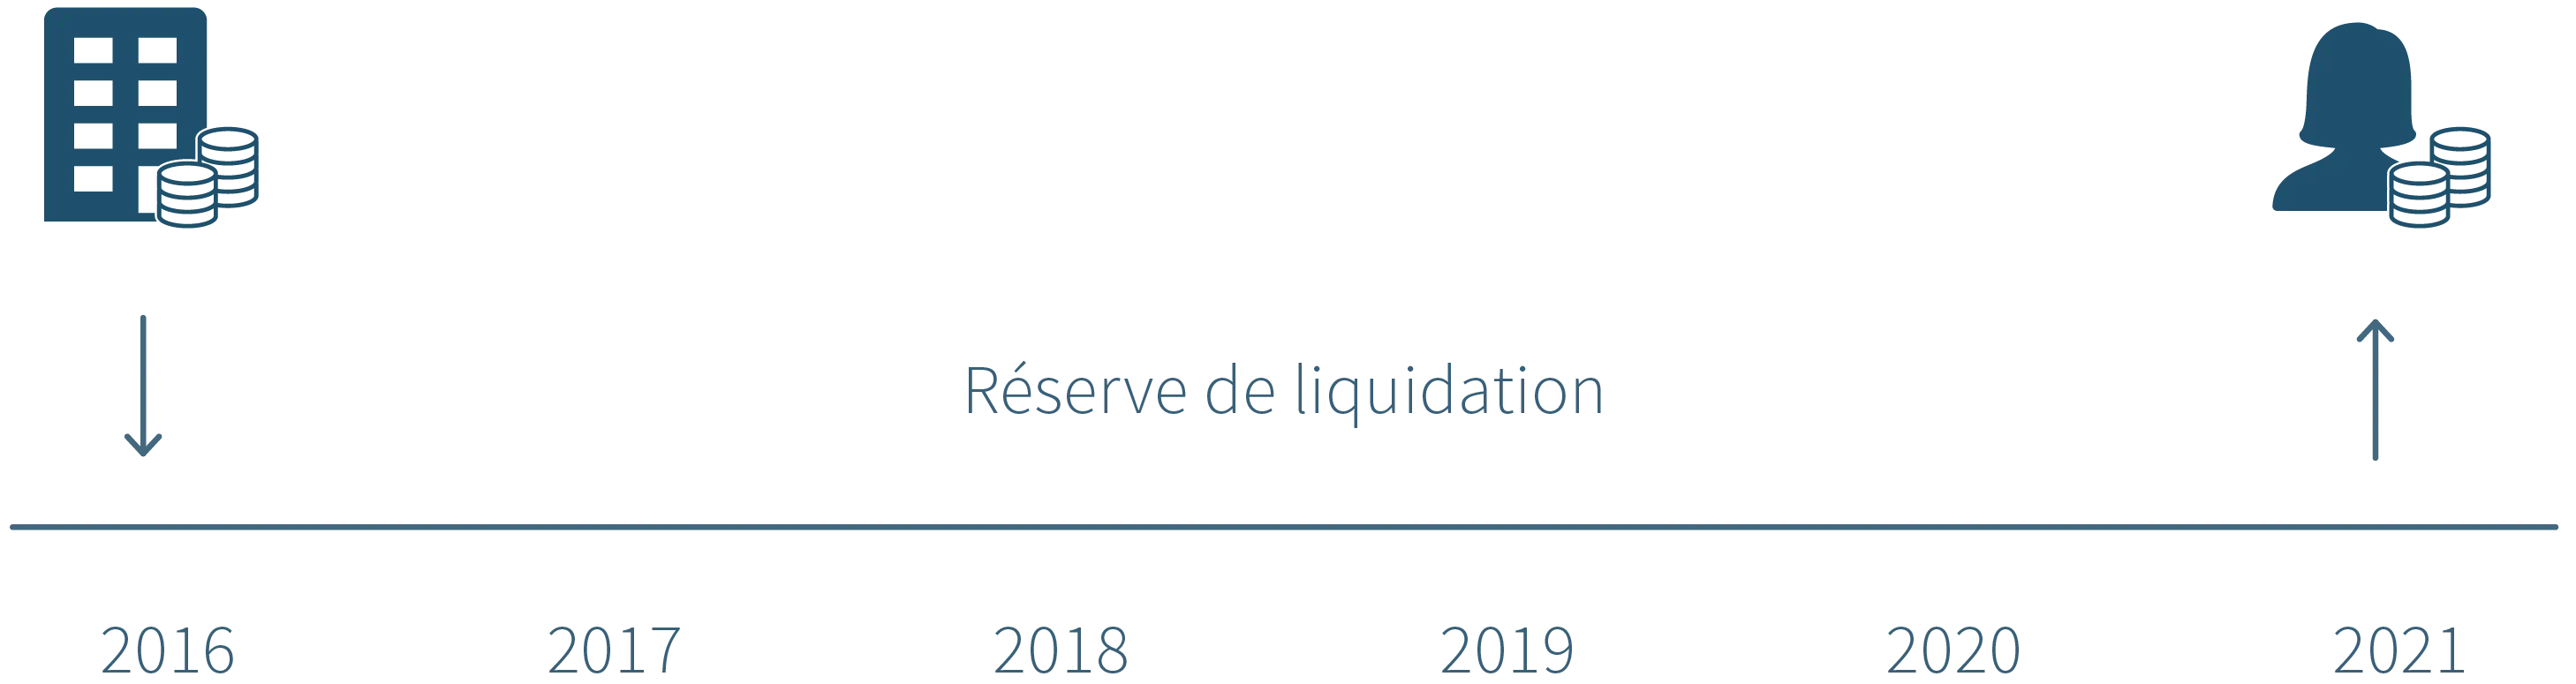 202103Juridisch-liquidatiereserve-FR-tijdslijn